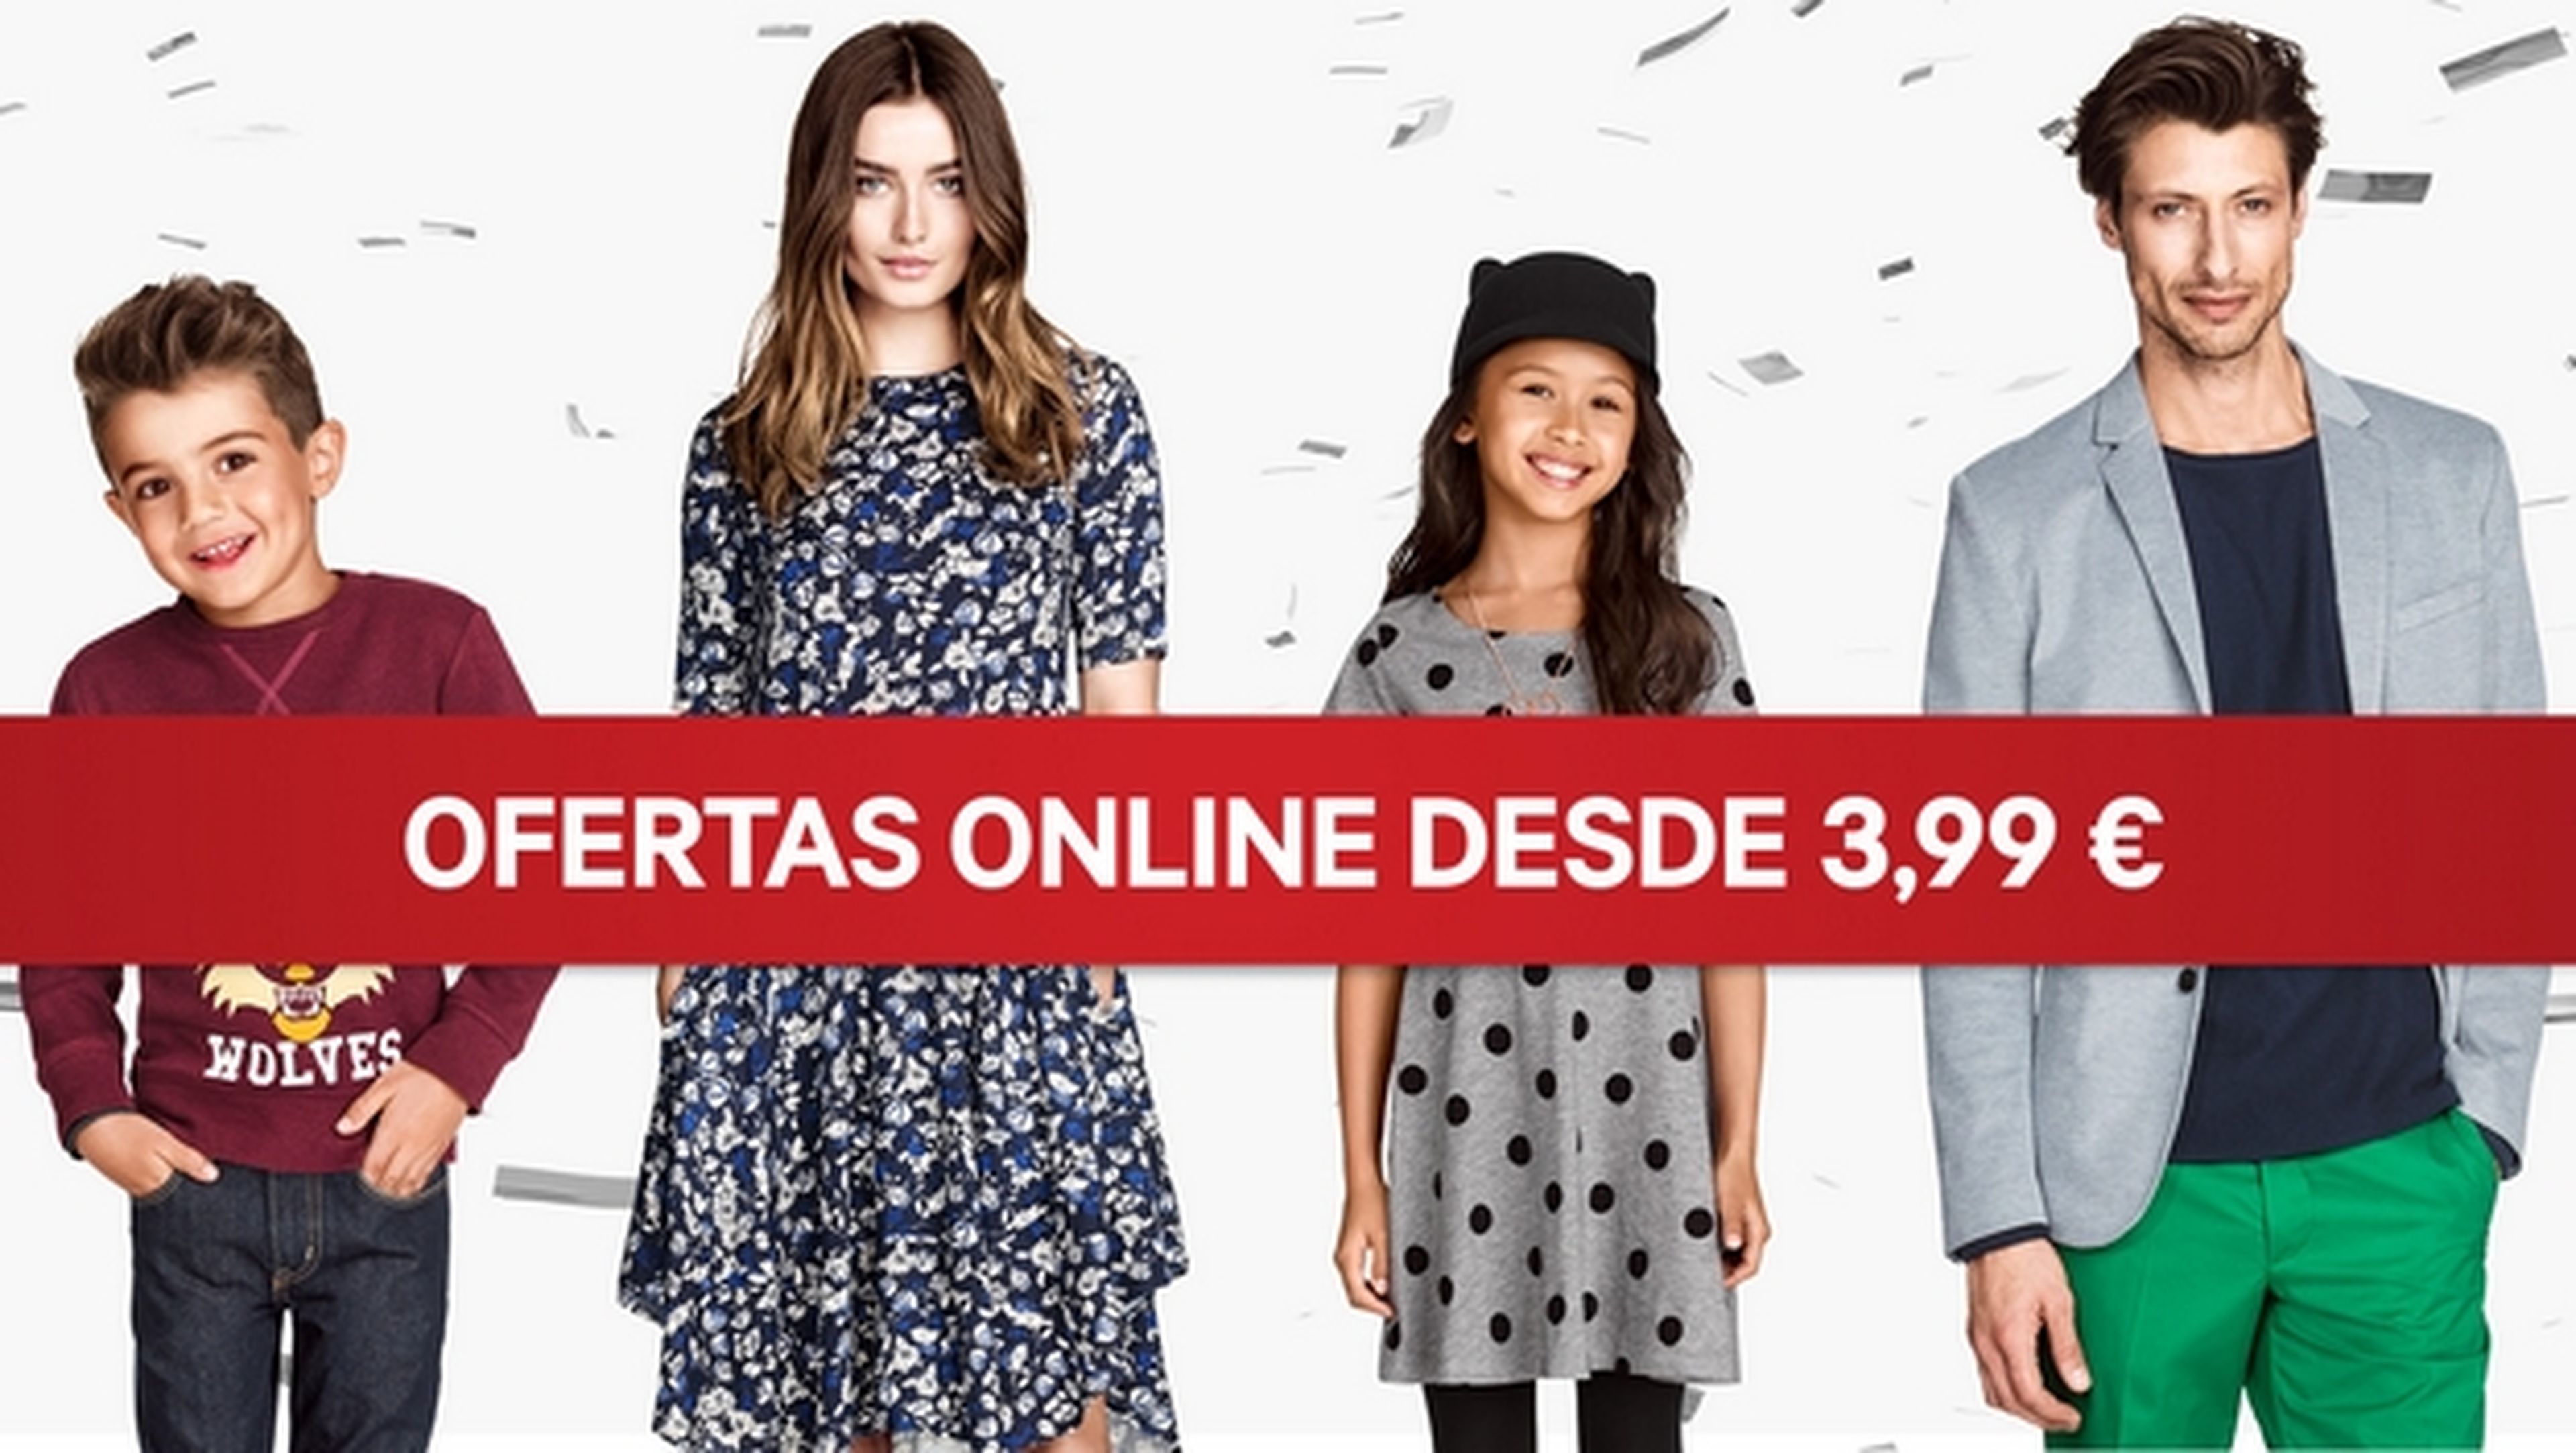 La cadena de tiendas de ropa H&M ya vende online en España, a través de su nueva tienda online.